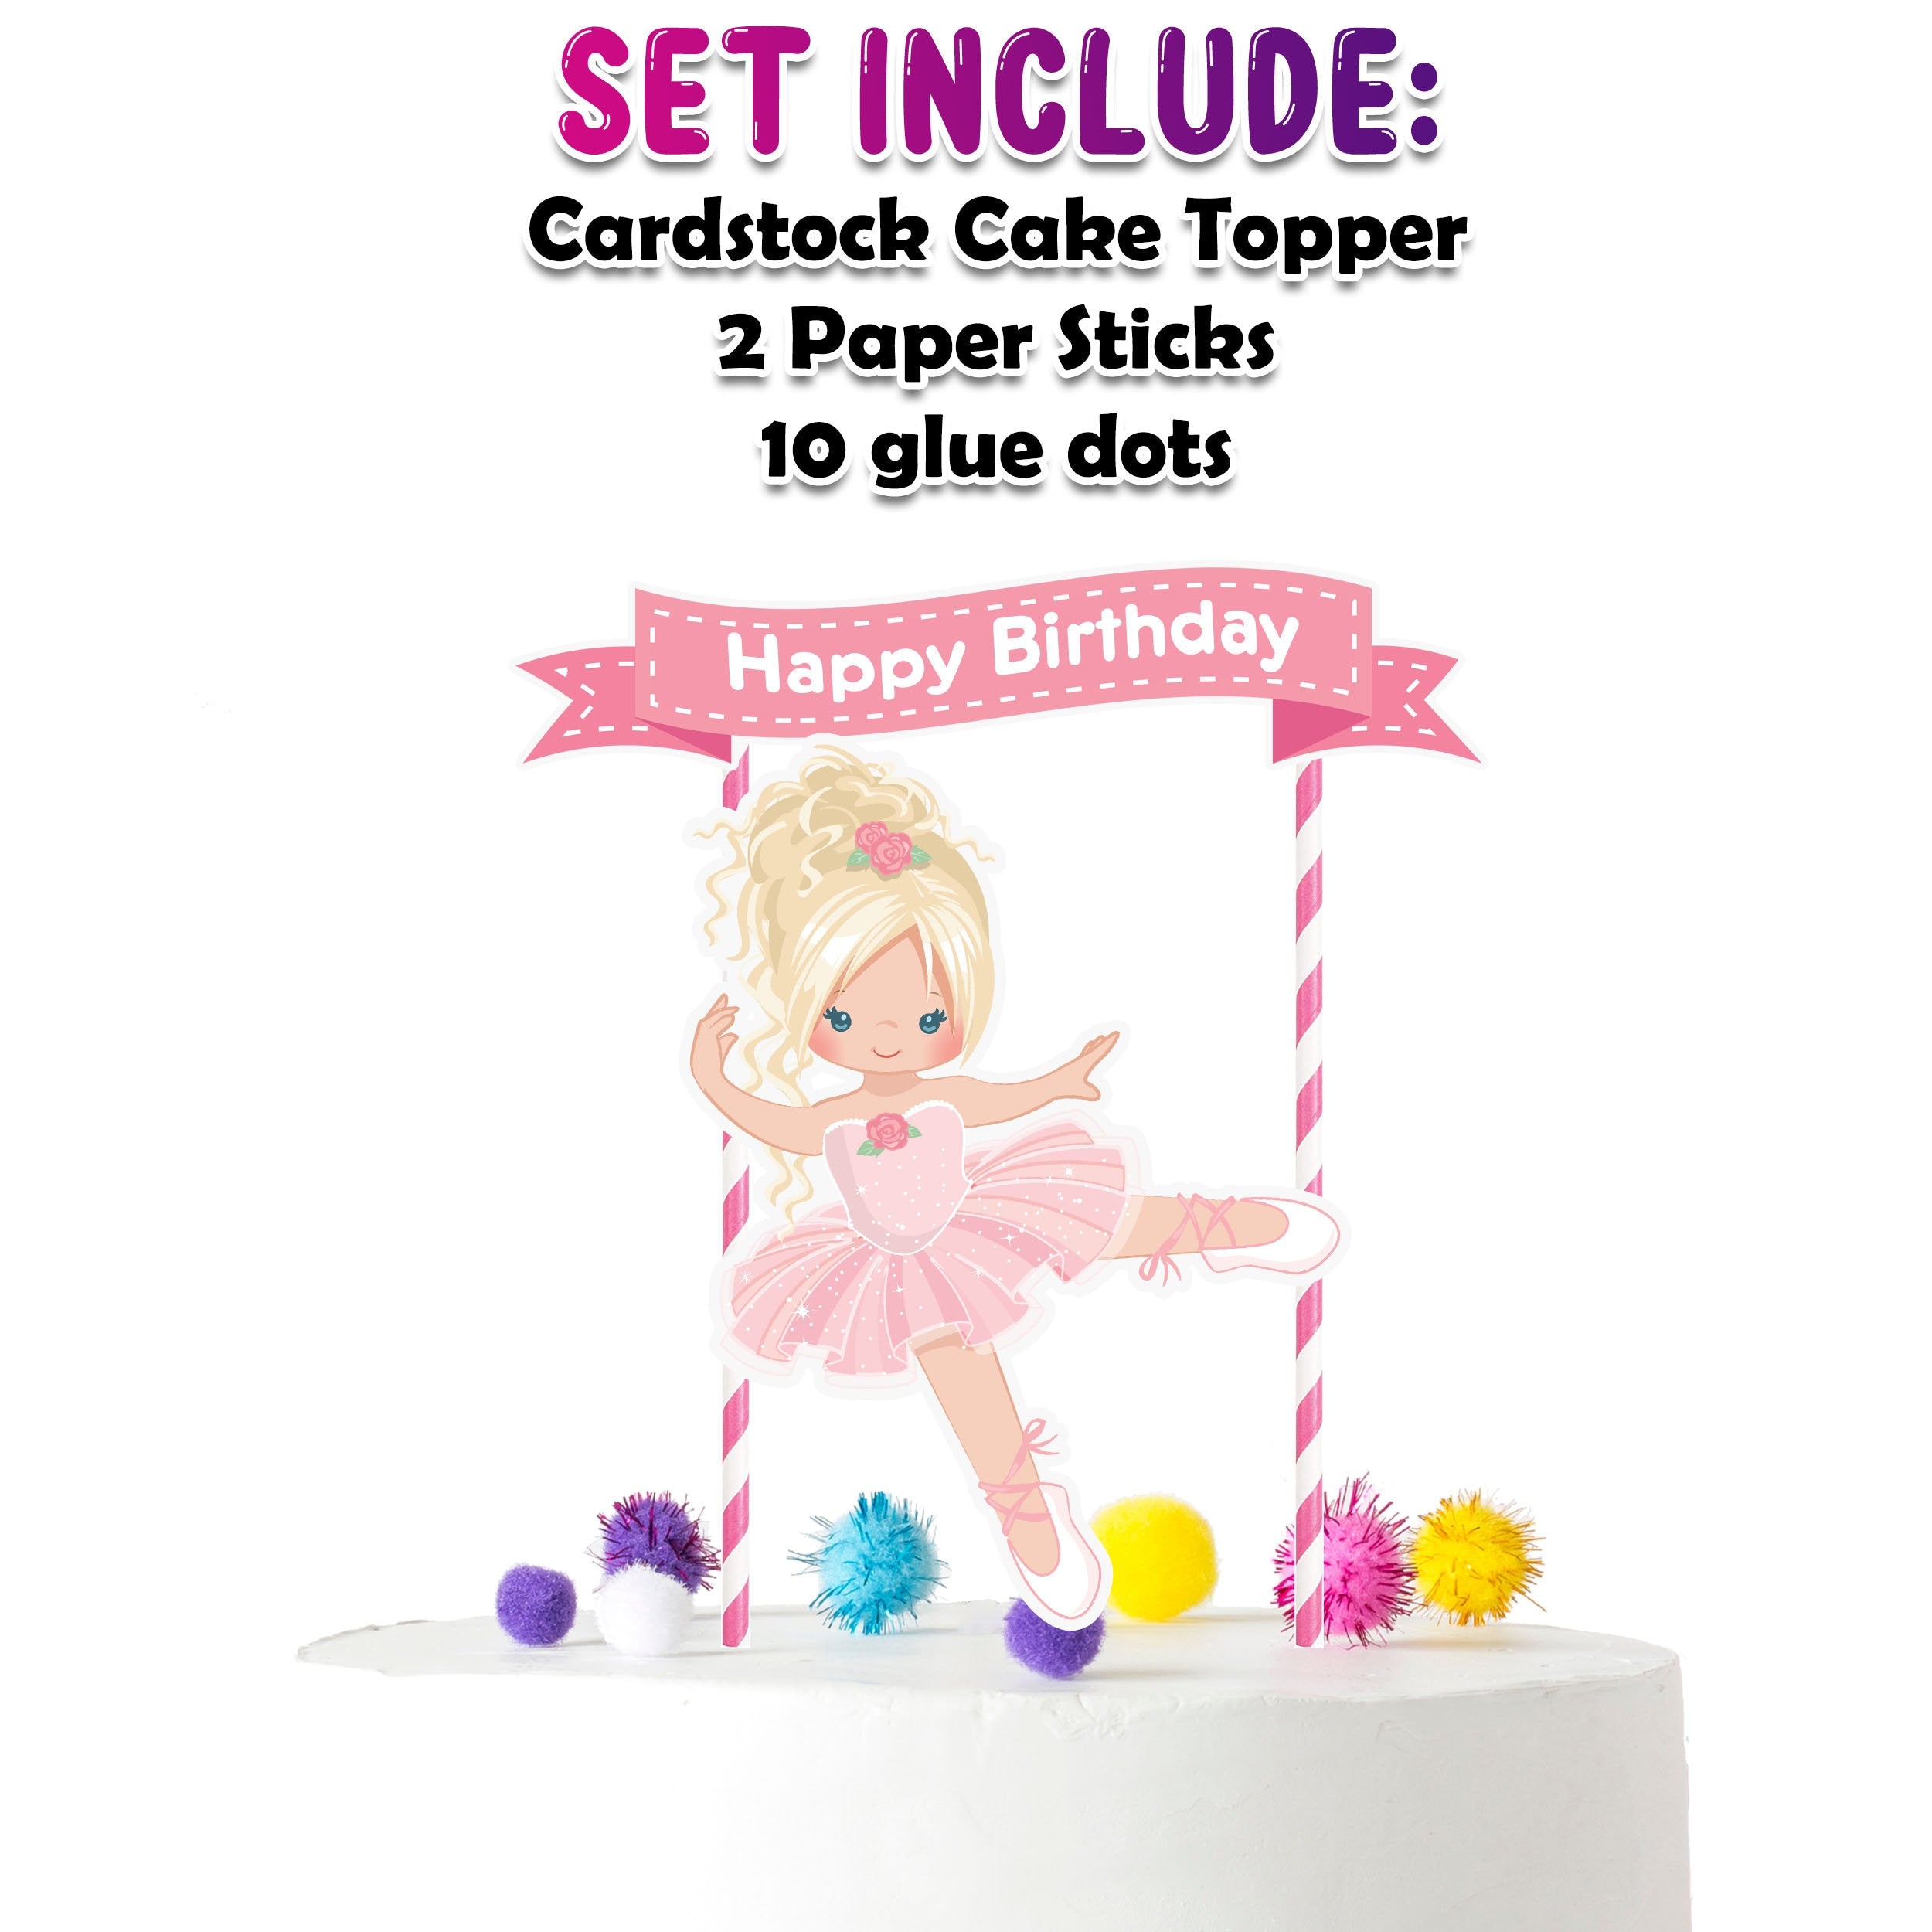 Graceful Pirouette - Elegant Ballerina Cartoon Cake Topper for Birthday Celebrations